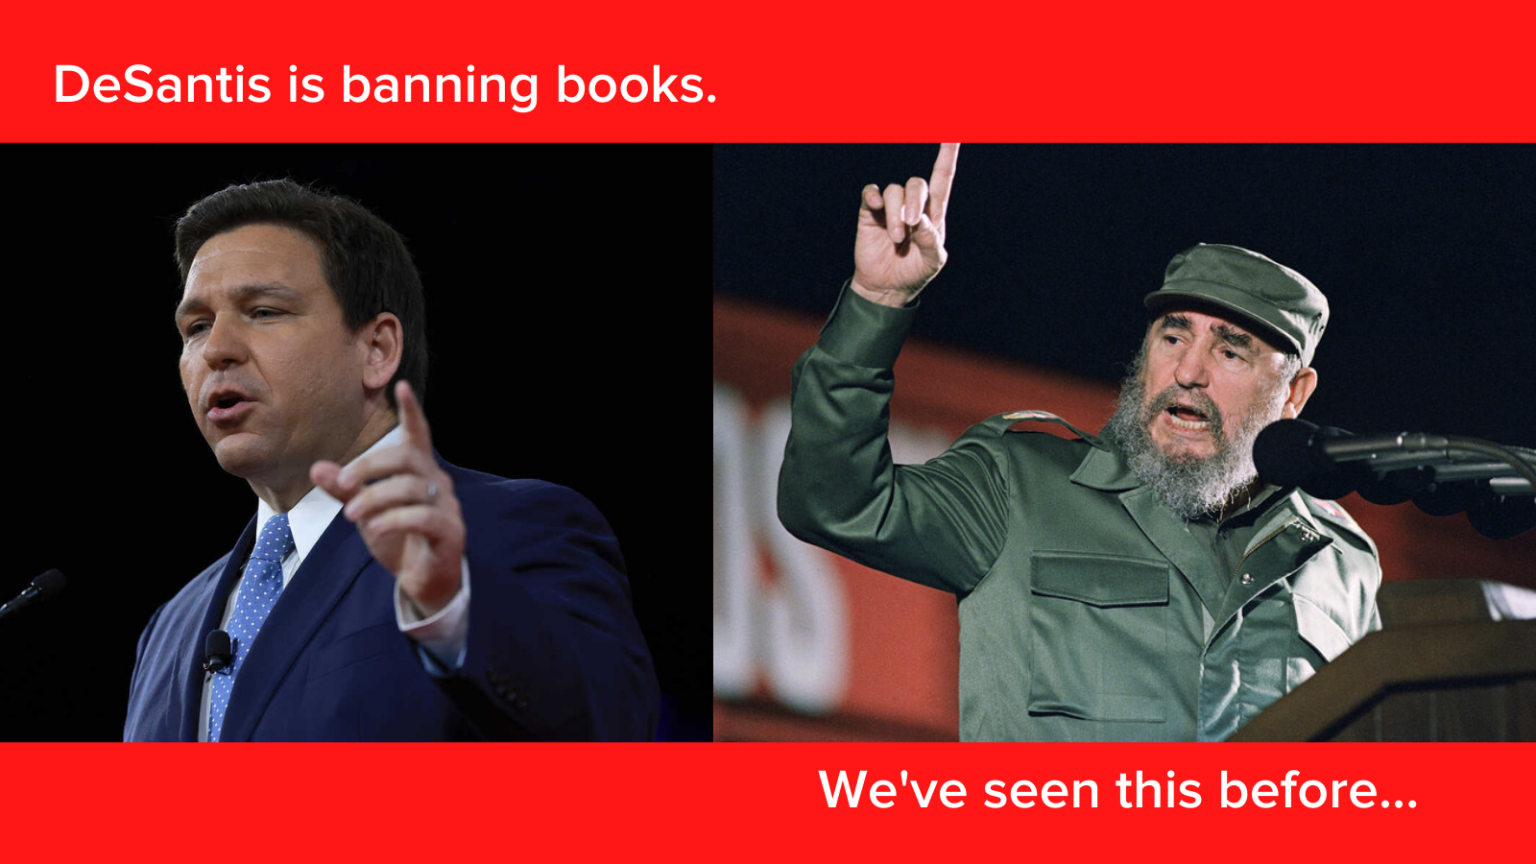 DeSantis comme Castro interdit les livres